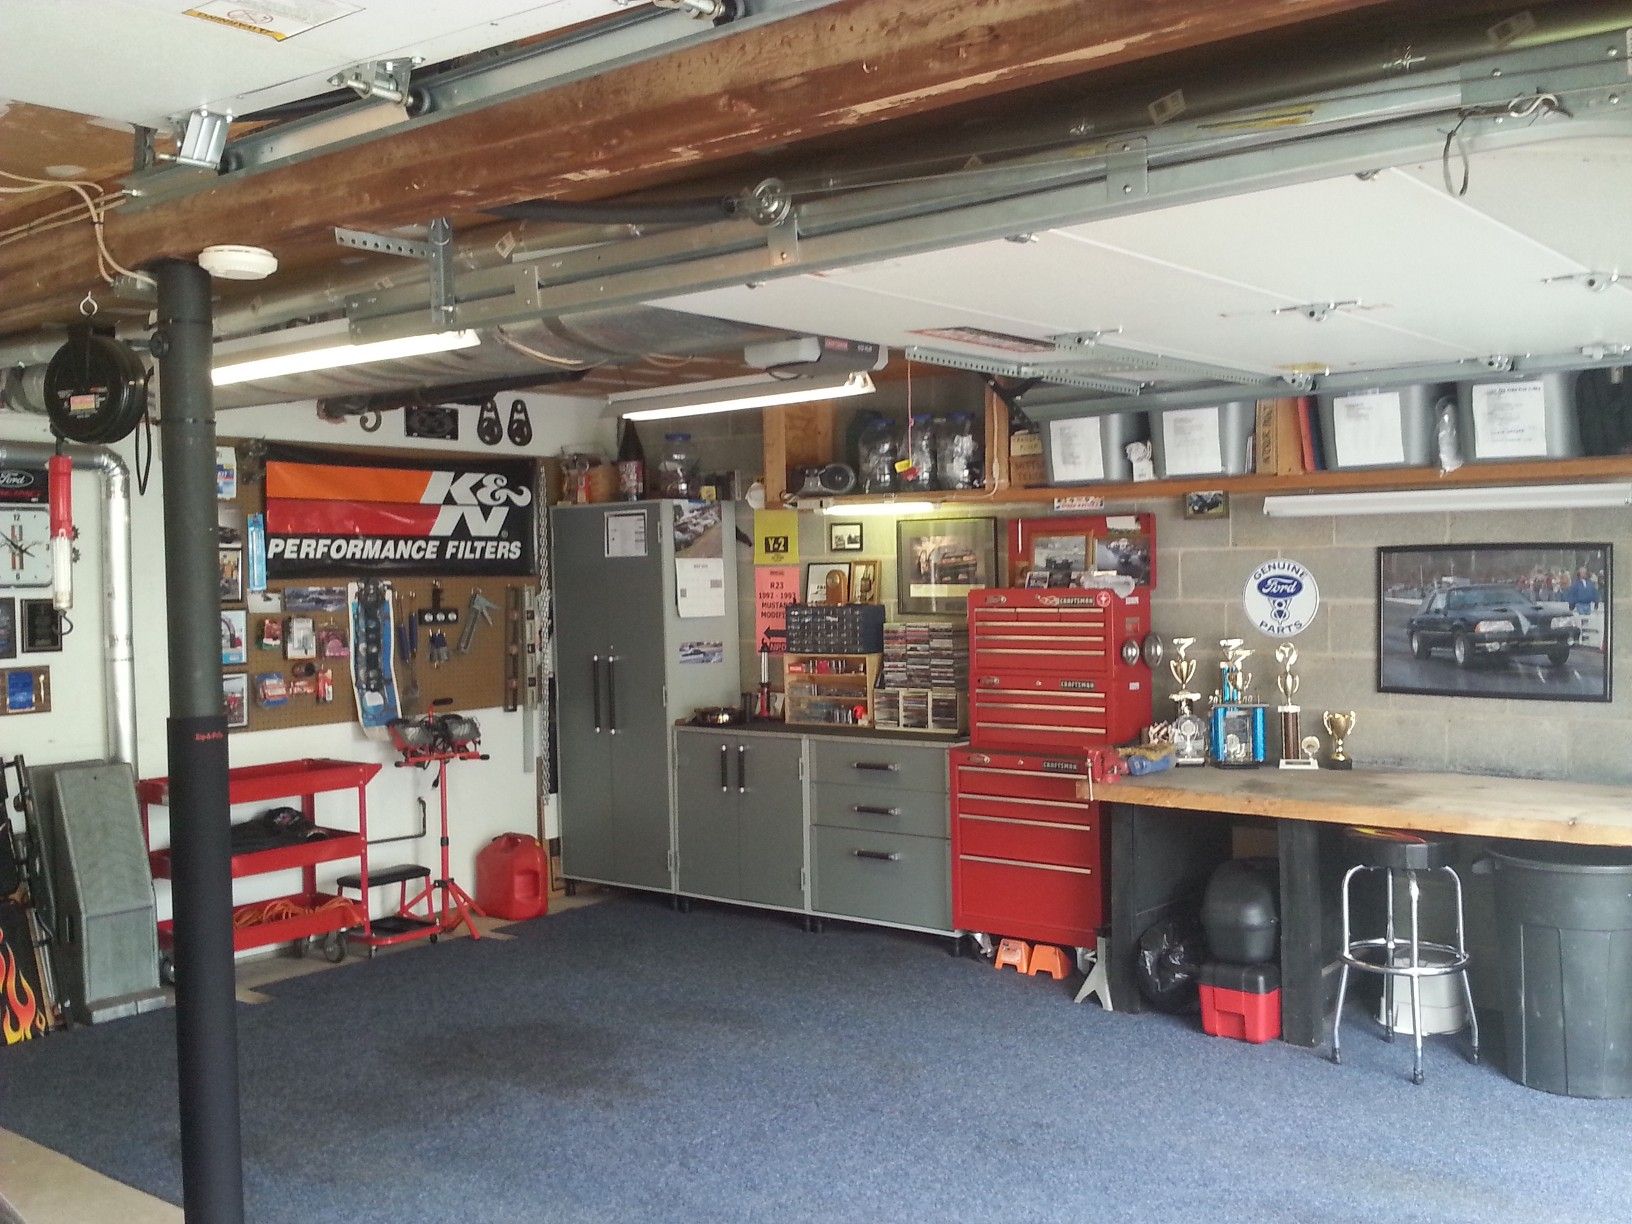 Гараж мастерская фото: Маленькие гаражи с мастерской – 55 луших фото, дизайн гаража, идеи обустройства и организации хранения % Query